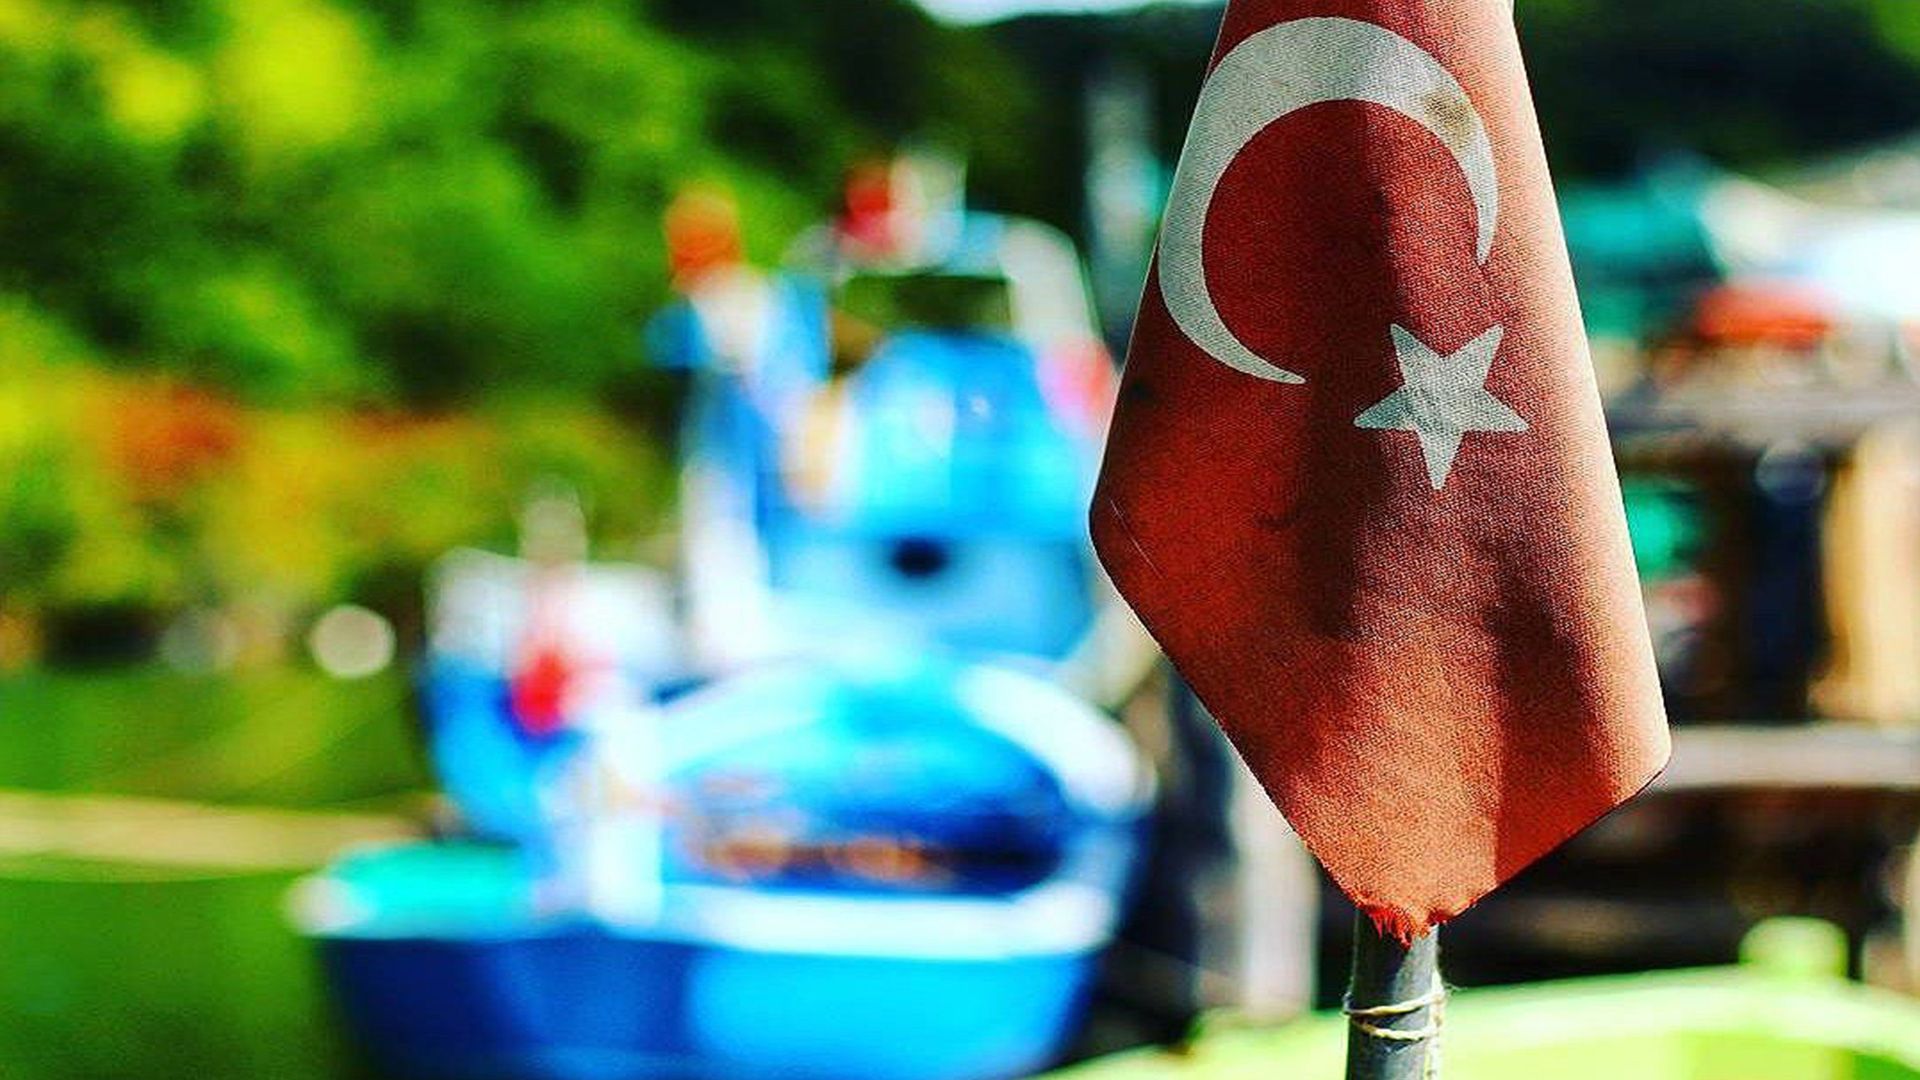 Turk bayragi resimi 5